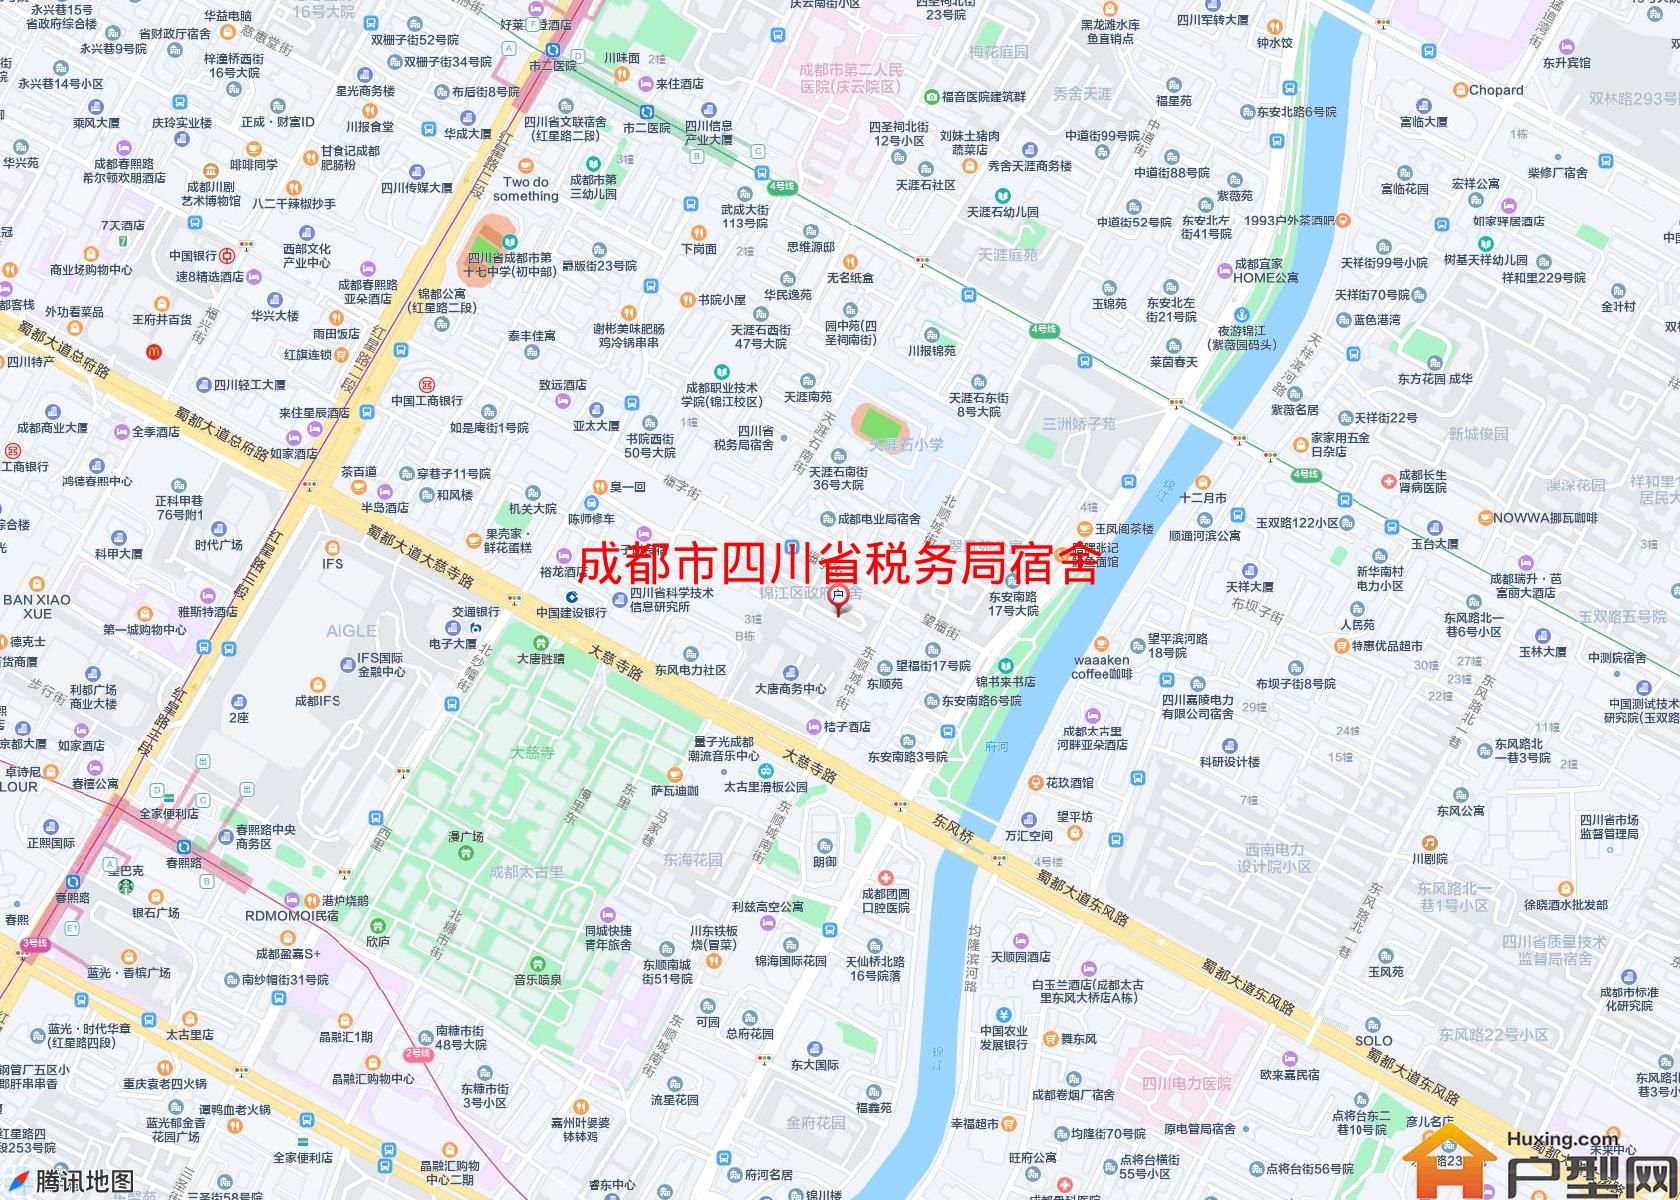 四川省税务局宿舍小区 - 户型网